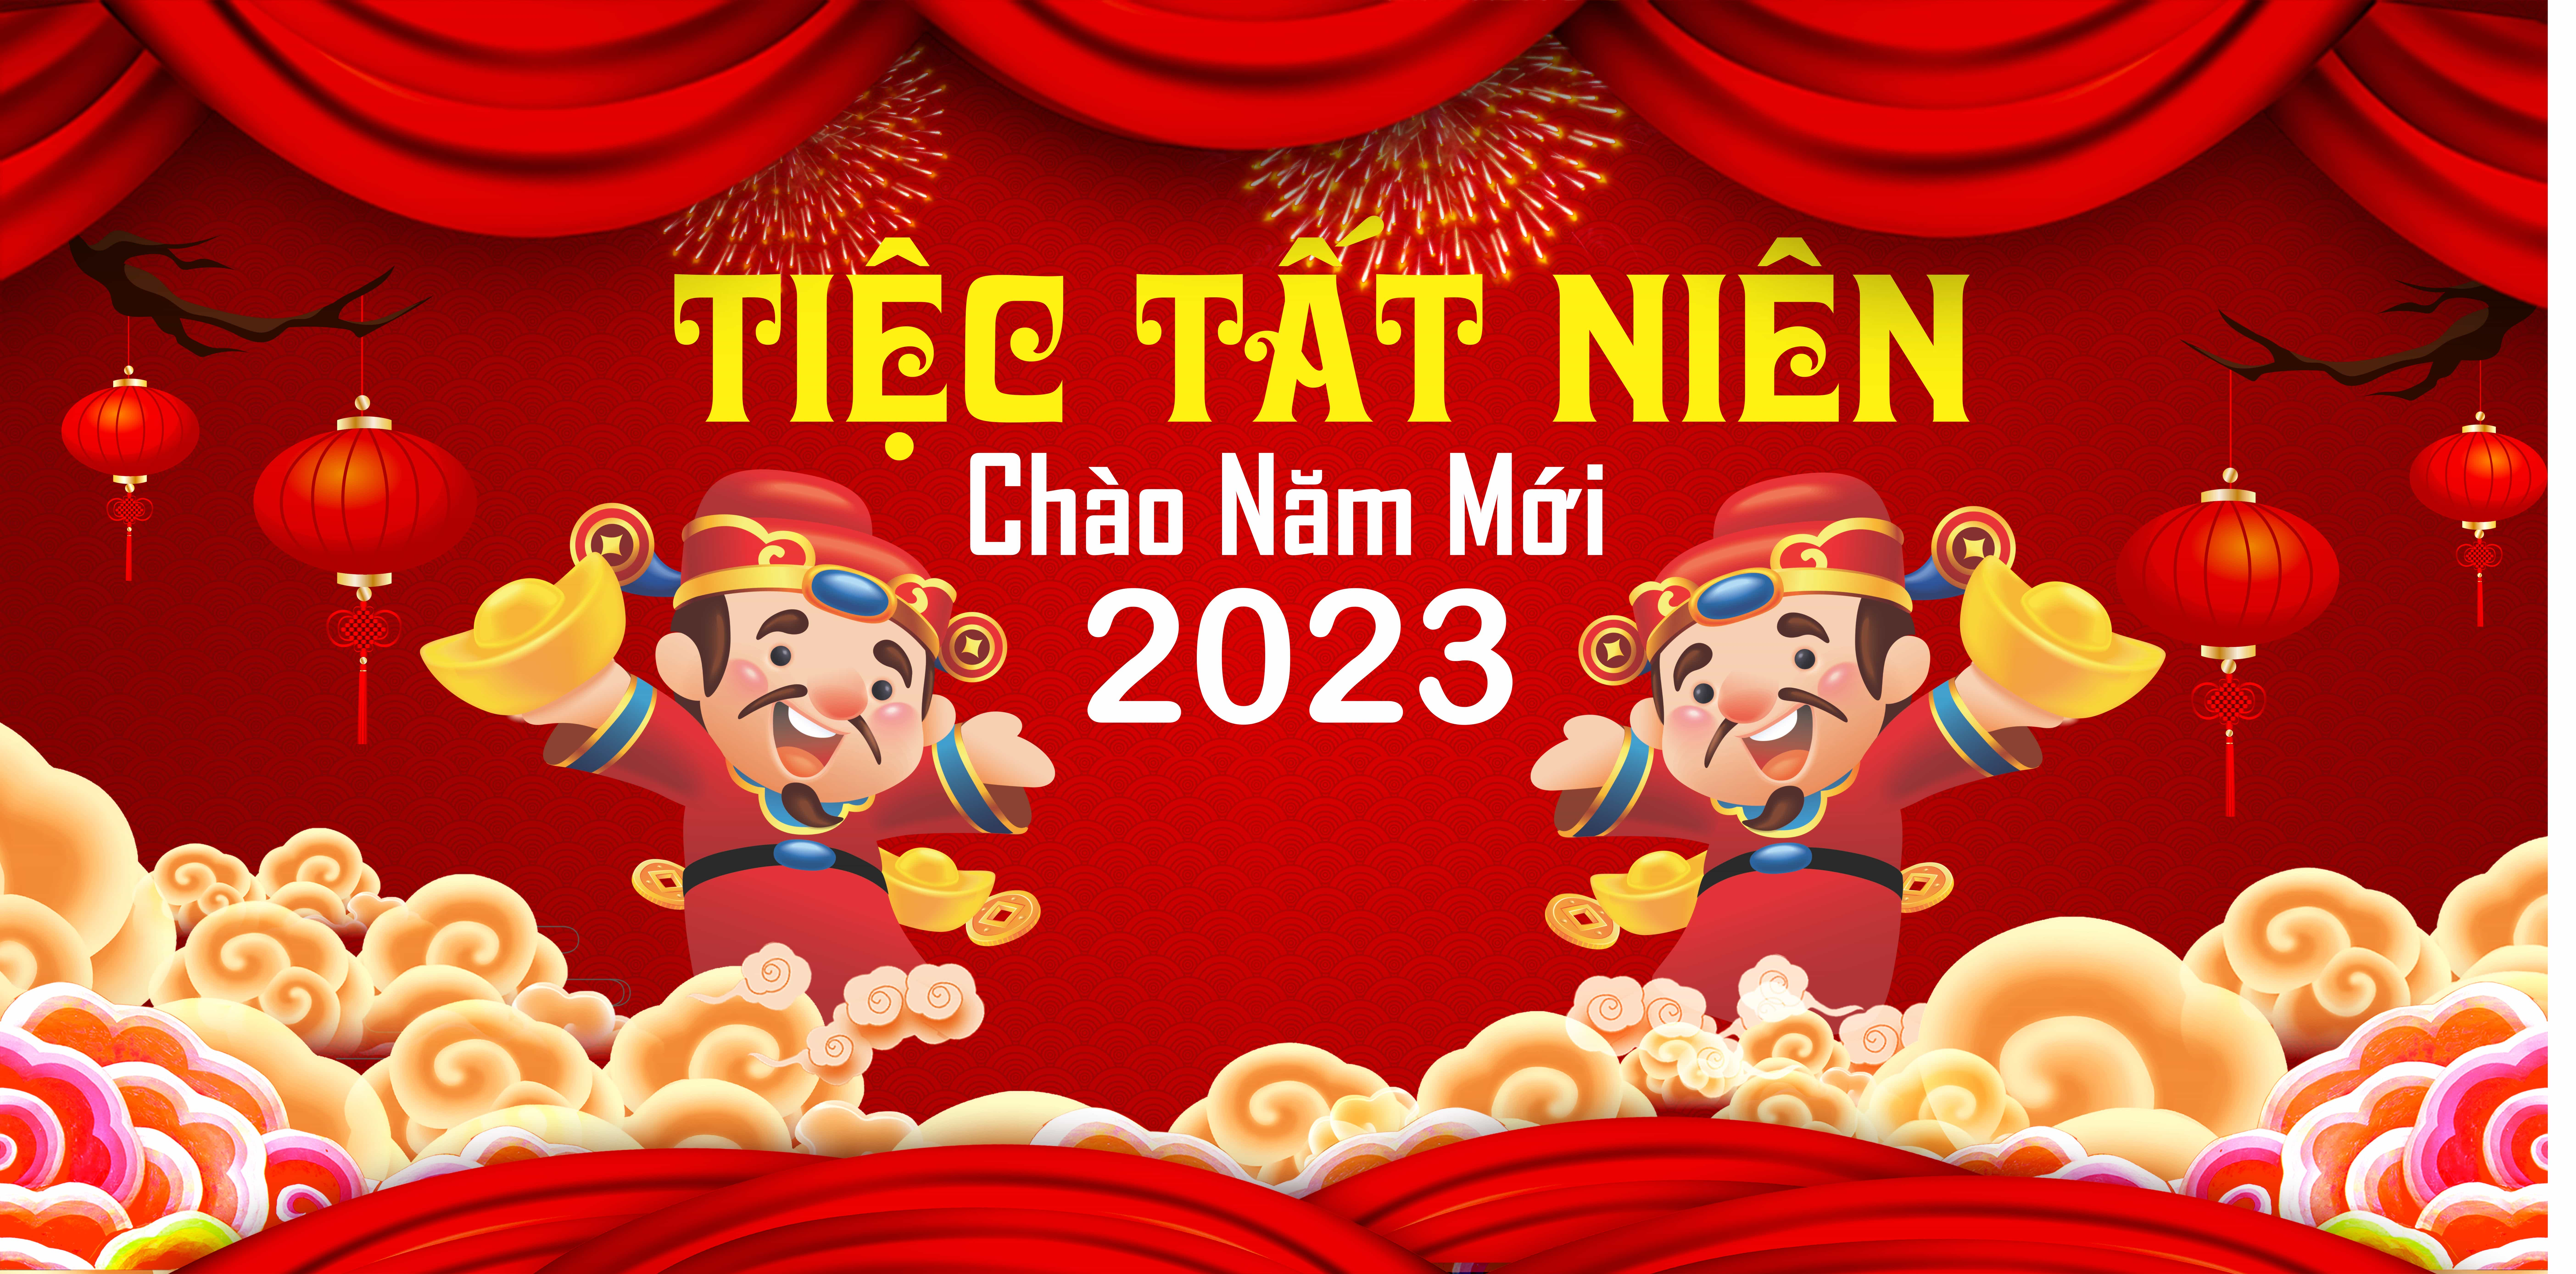 Mẫu backdrop tiệc tất niên chào mừng năm mới 2023 | Vector happy new year 2023 #13